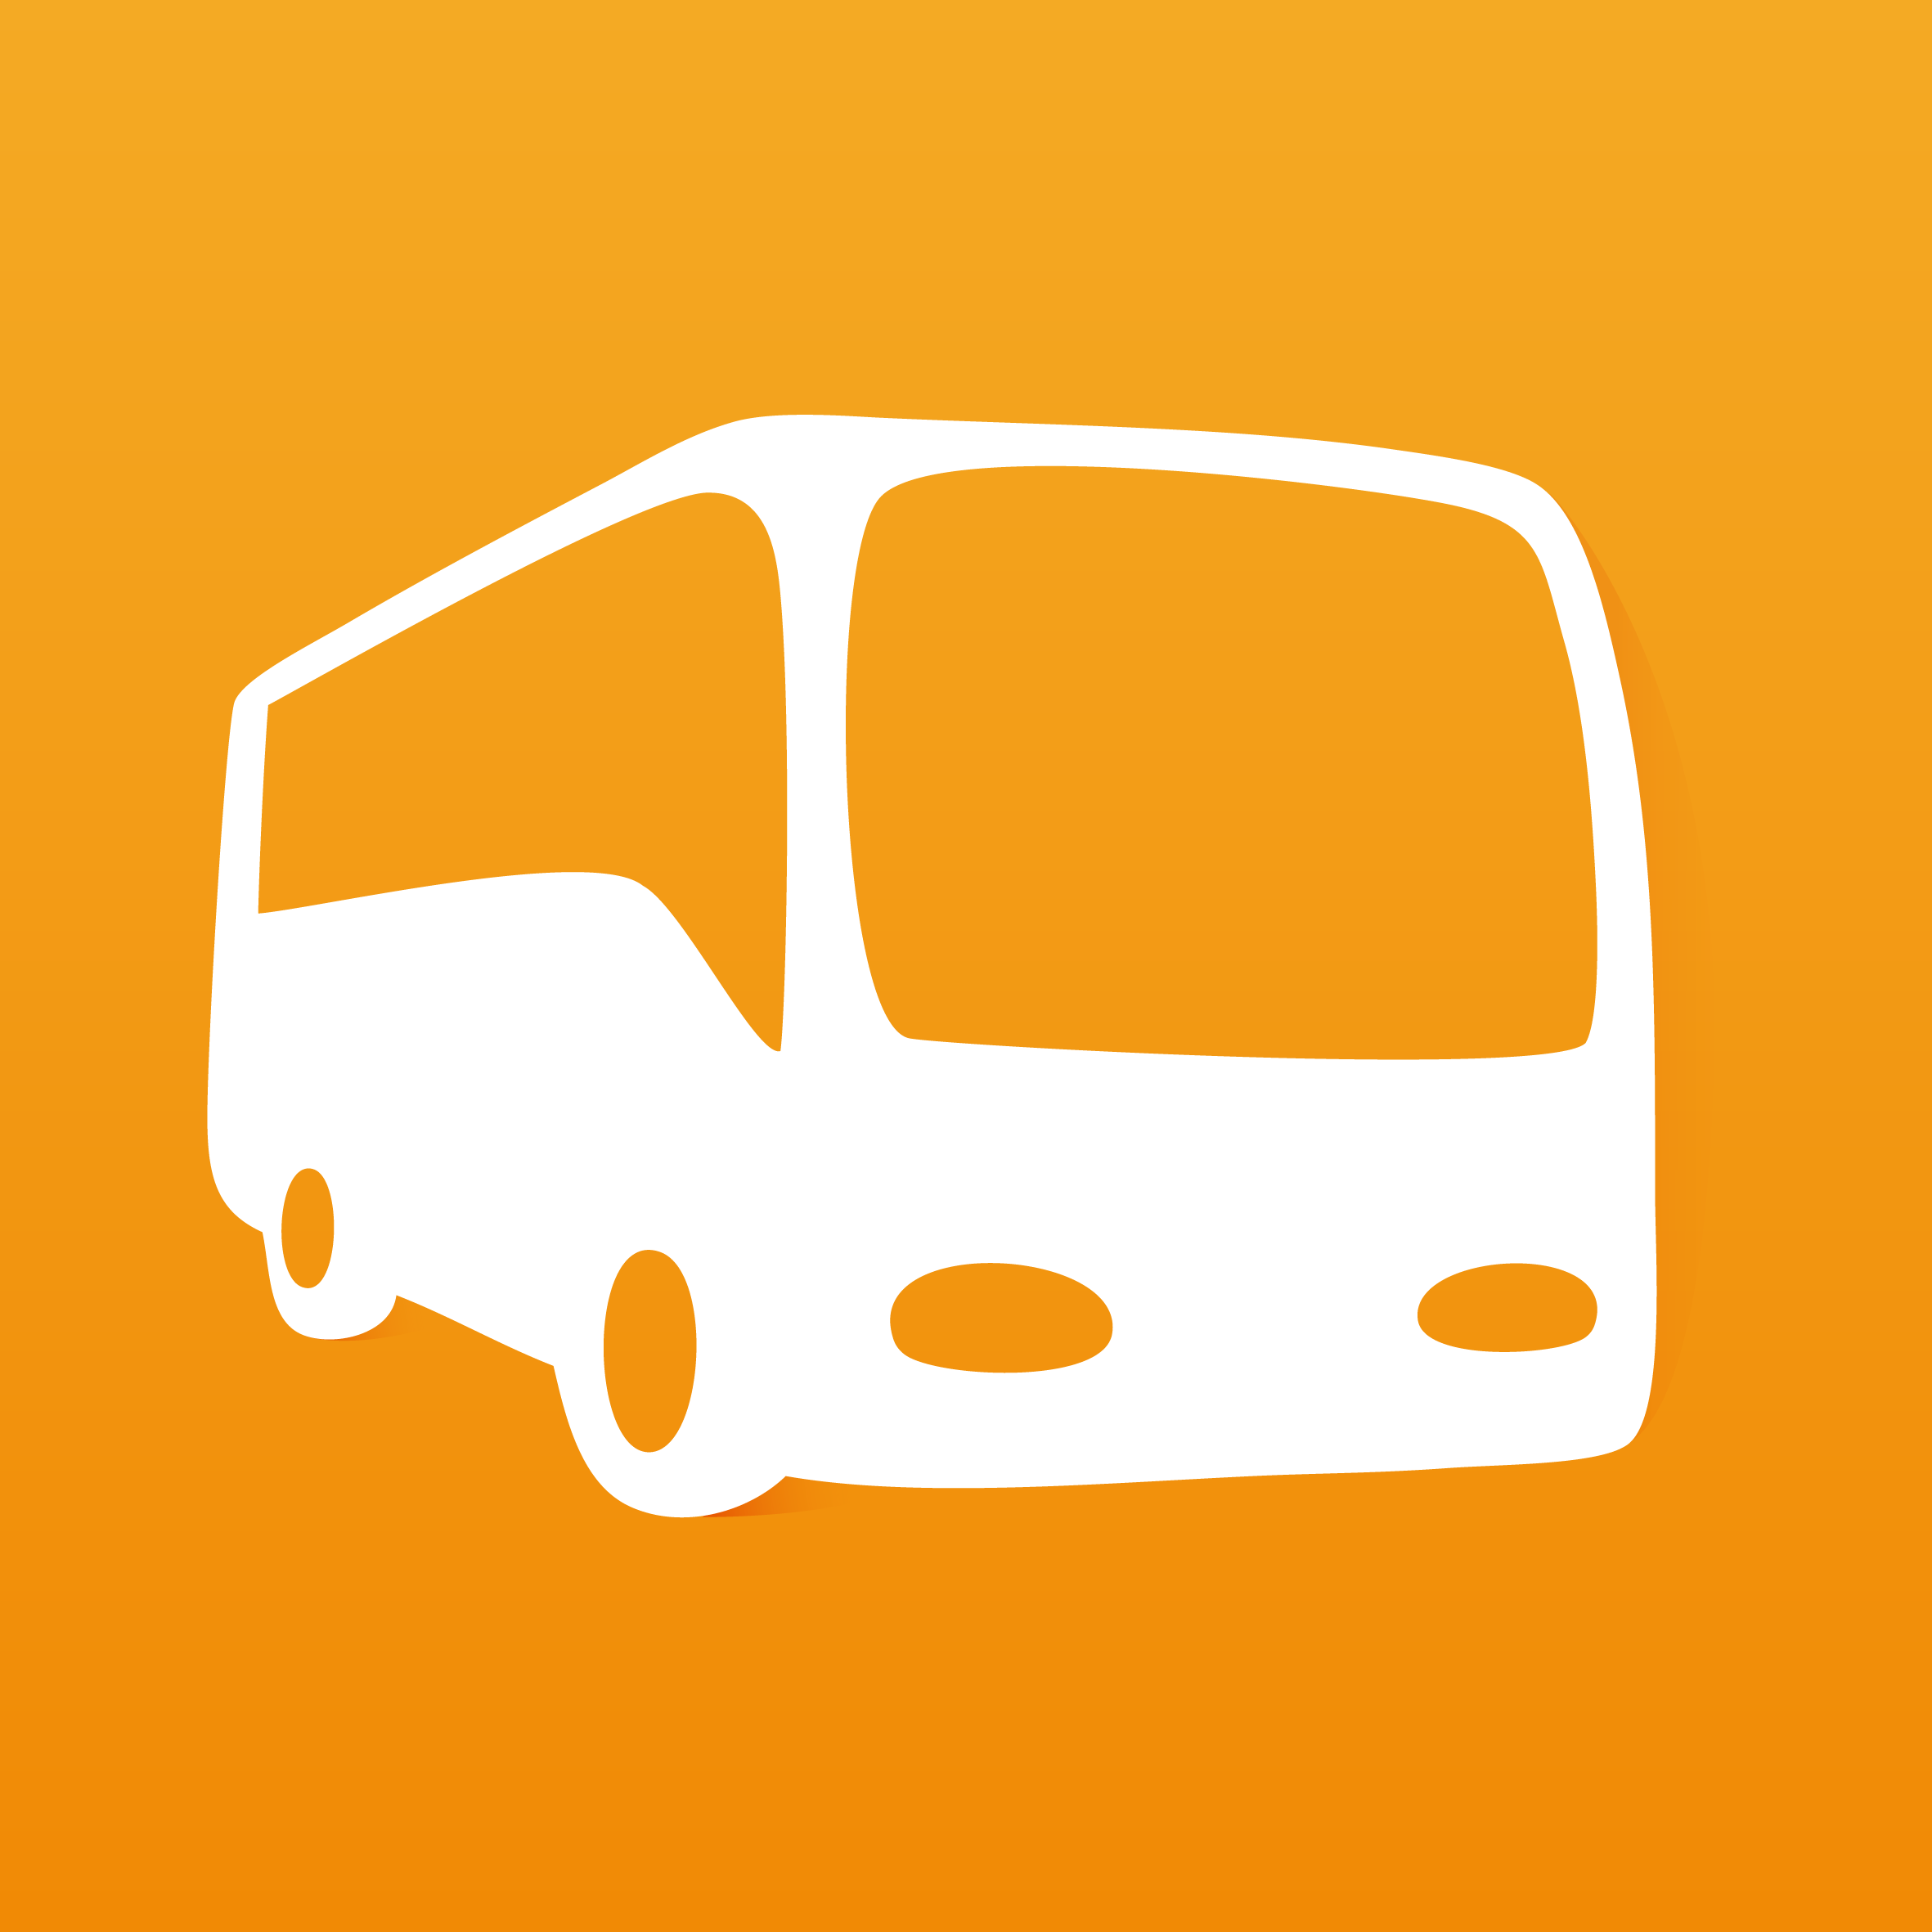 嘀嘀巴士_嘀嘀巴士小程序_嘀嘀巴士微信小程序